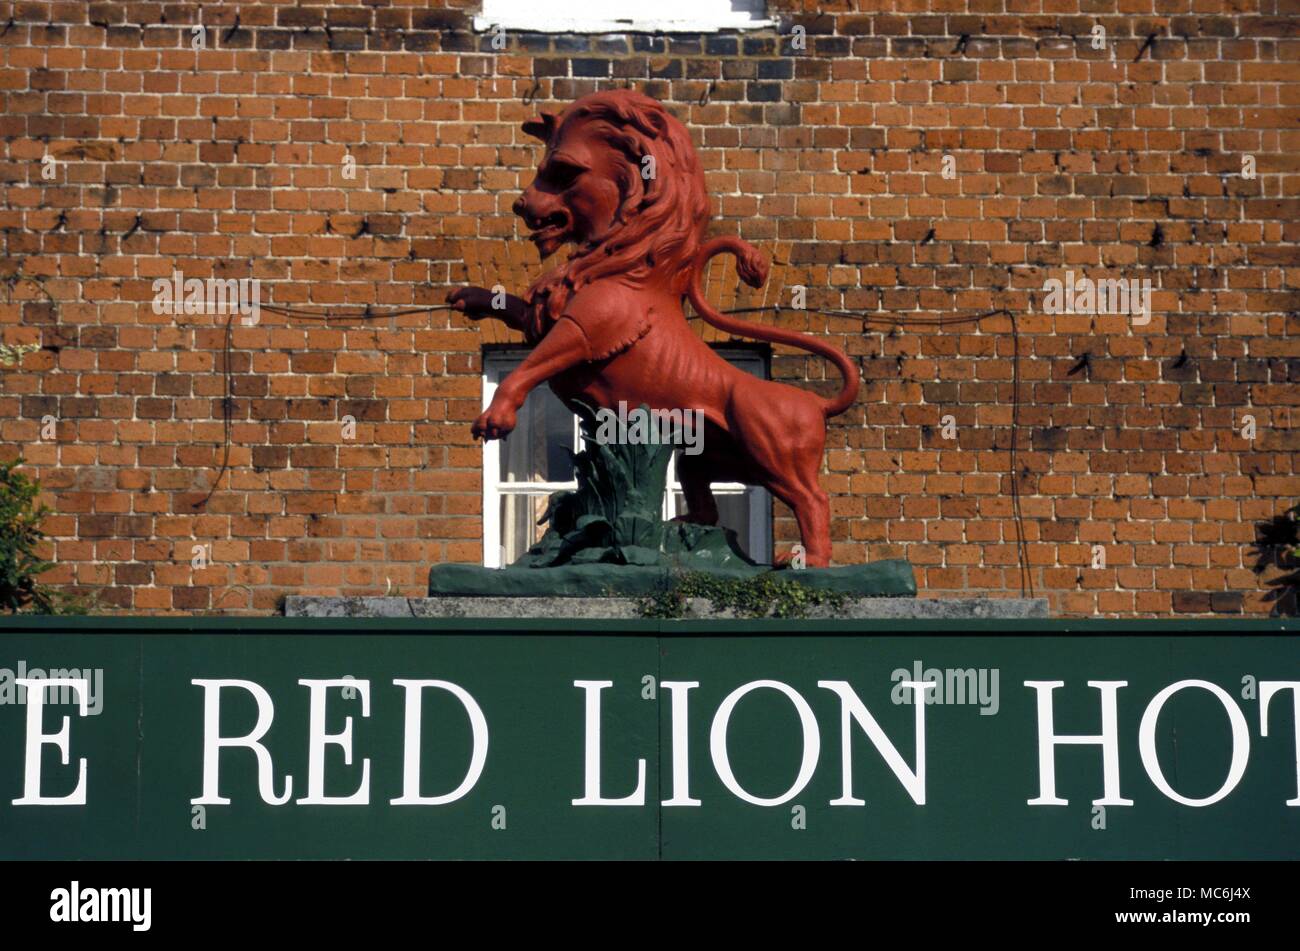 Red Lion uno dei pub stabilito simboli che probabilmente deriva dalla tradizione alchemica Foto Stock